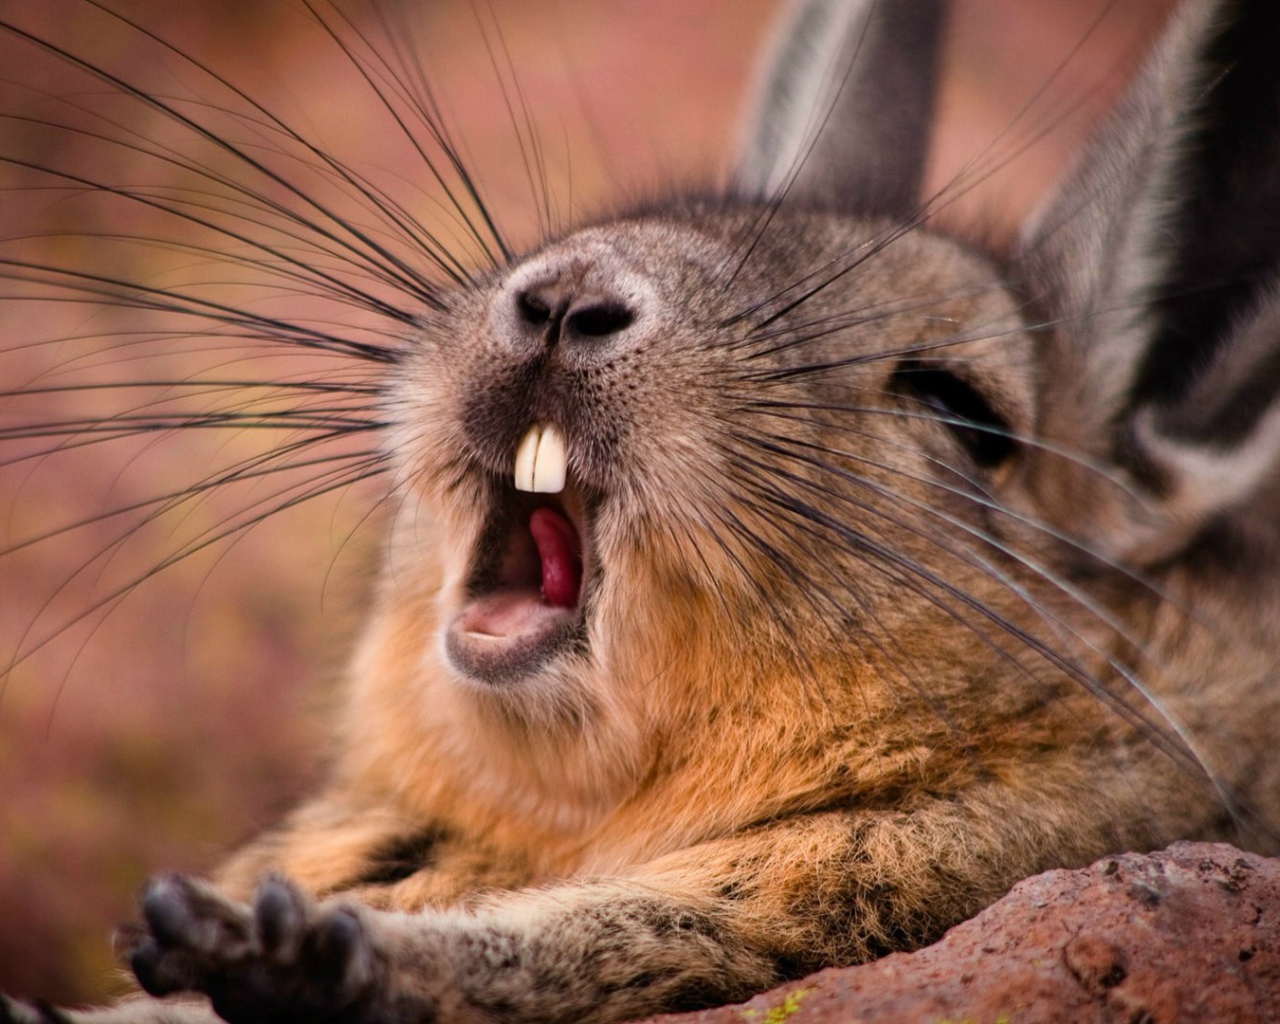 Wild rabbit yawns